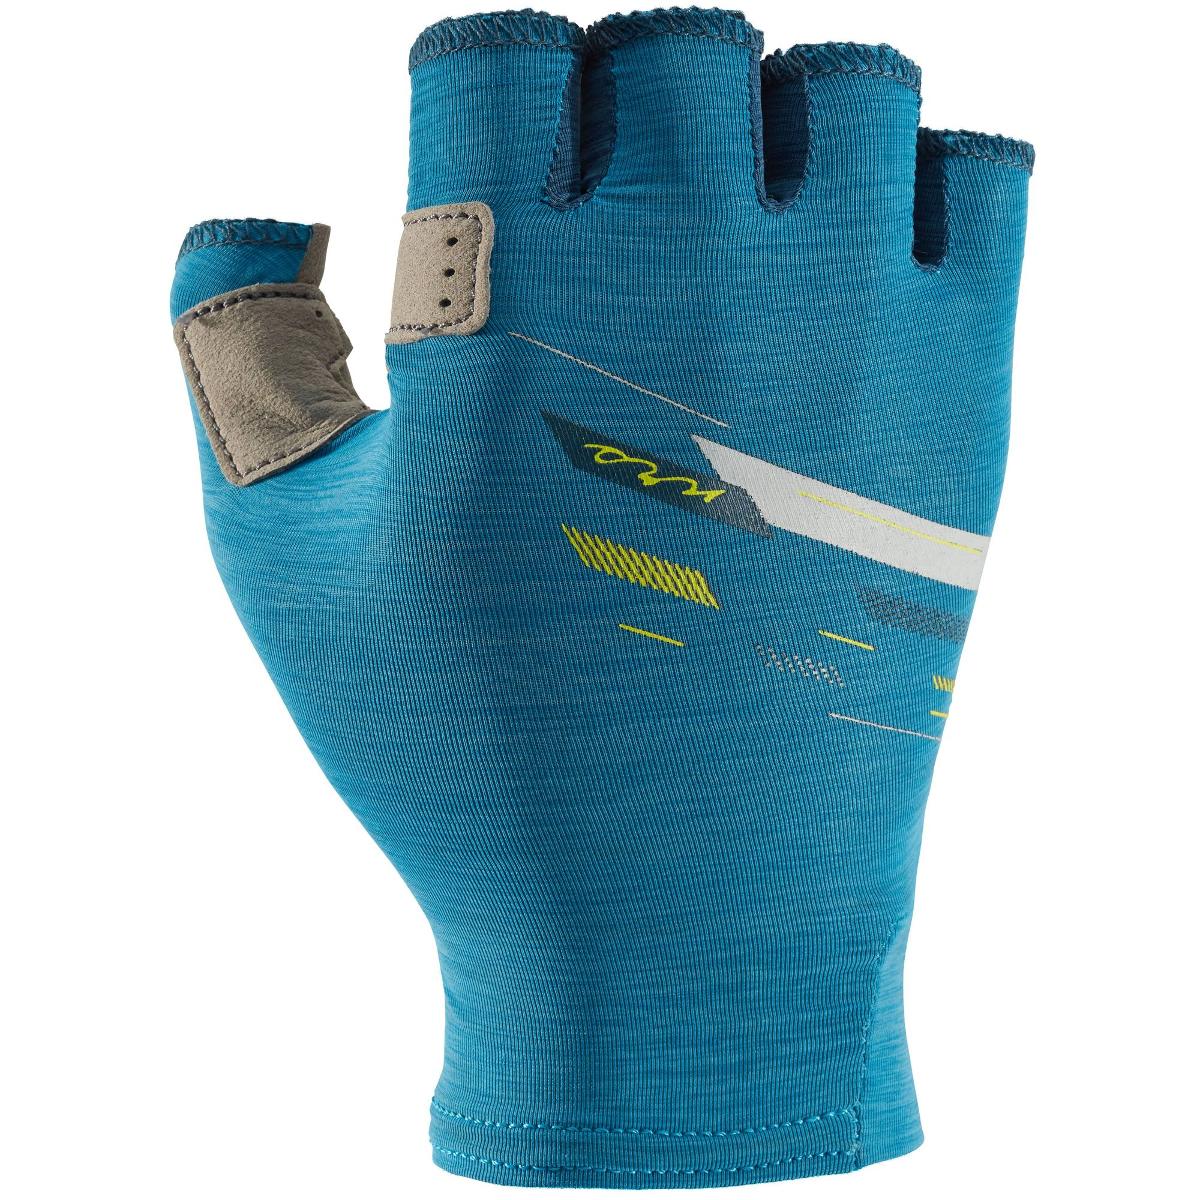 NRS Boater Paddling Gloves, Women's